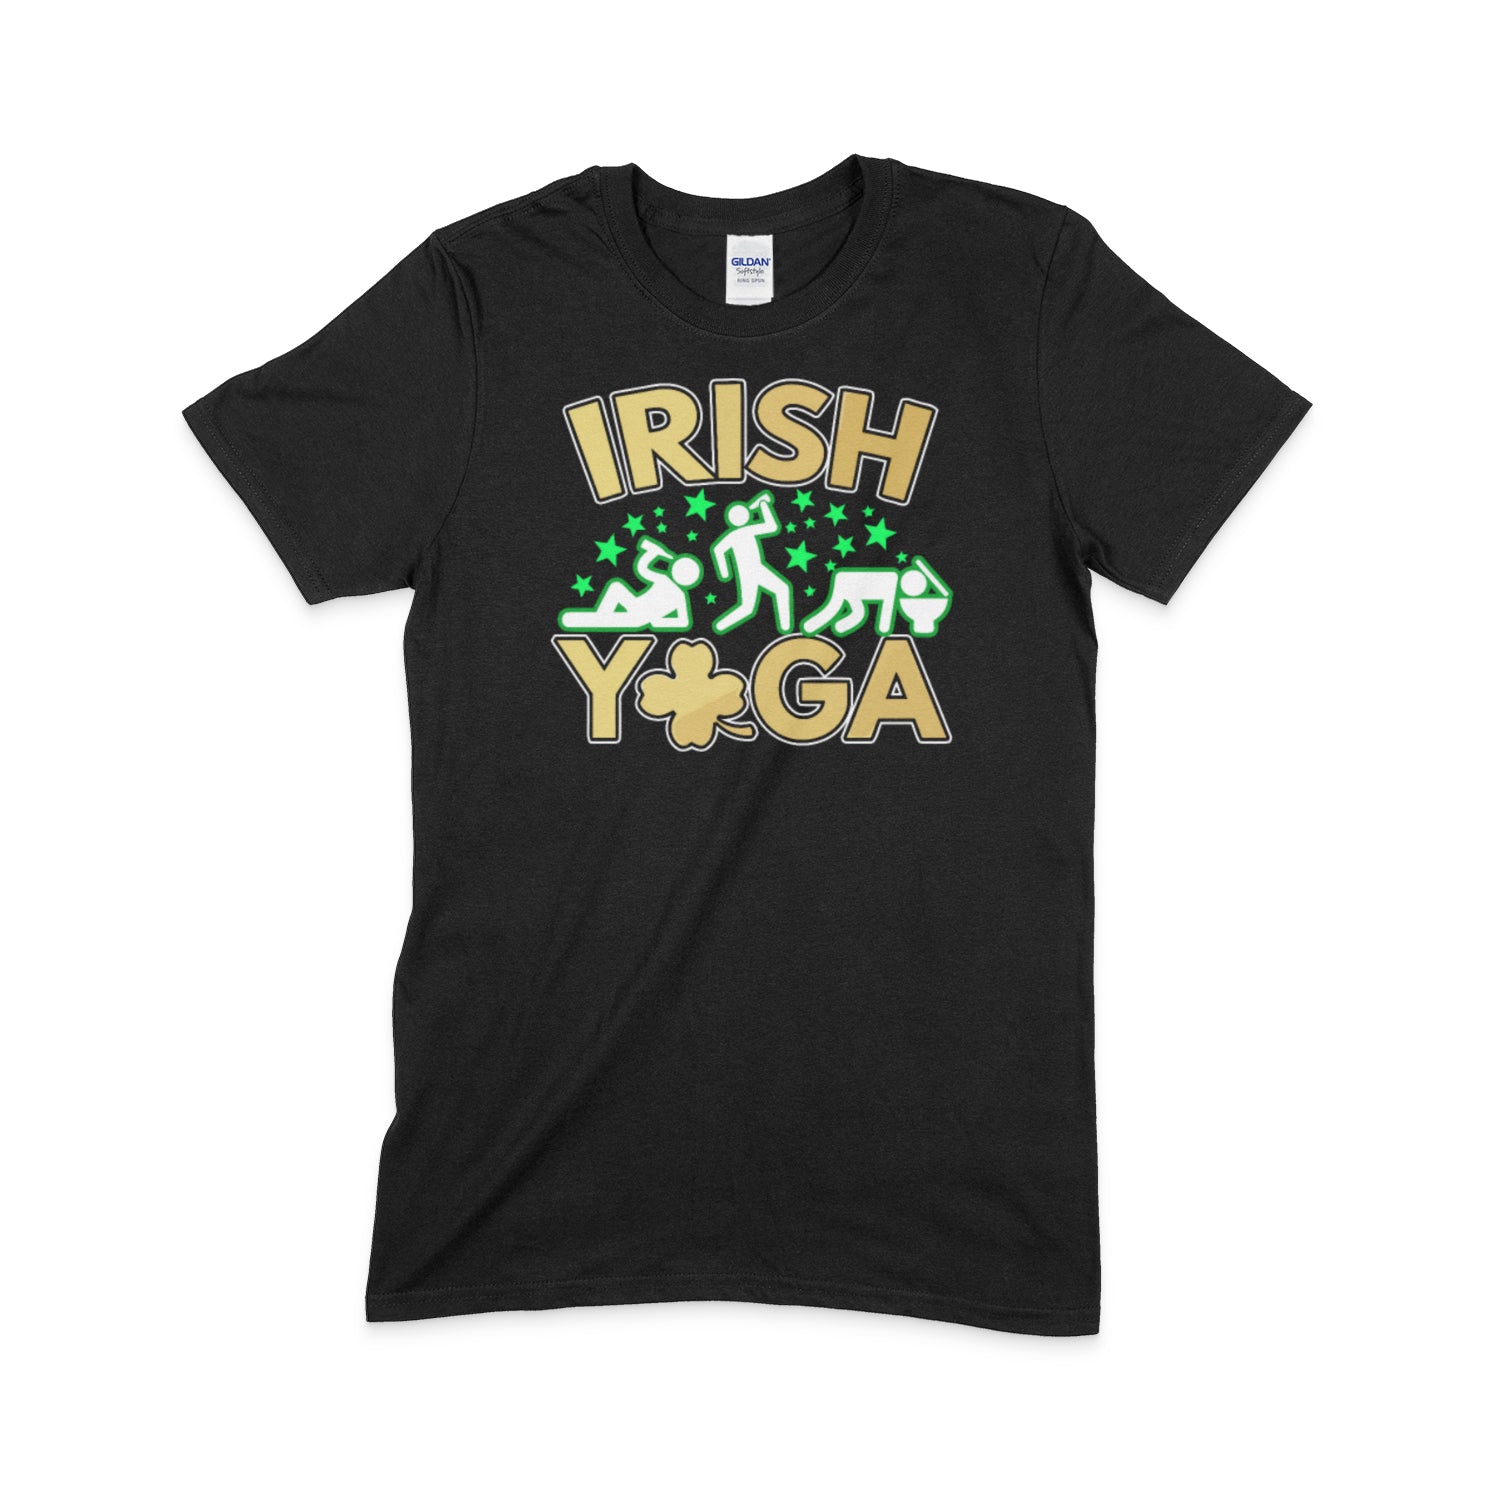 Irish Yoga Tee Shirts - CRW Flags Store in Glen Burnie, Maryland